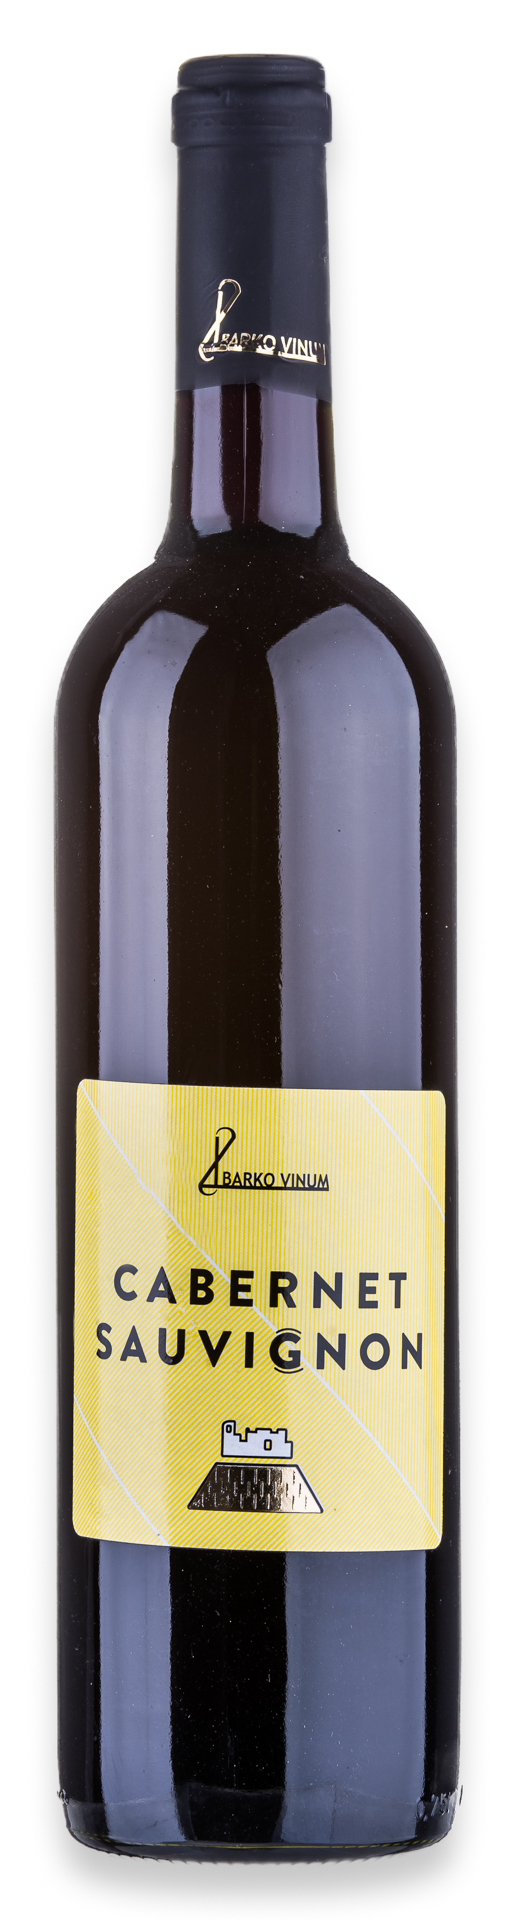 Vínová fľaša Cabernet sauvignon Barko Vinum od Best4Friends, TAGS.WORLD